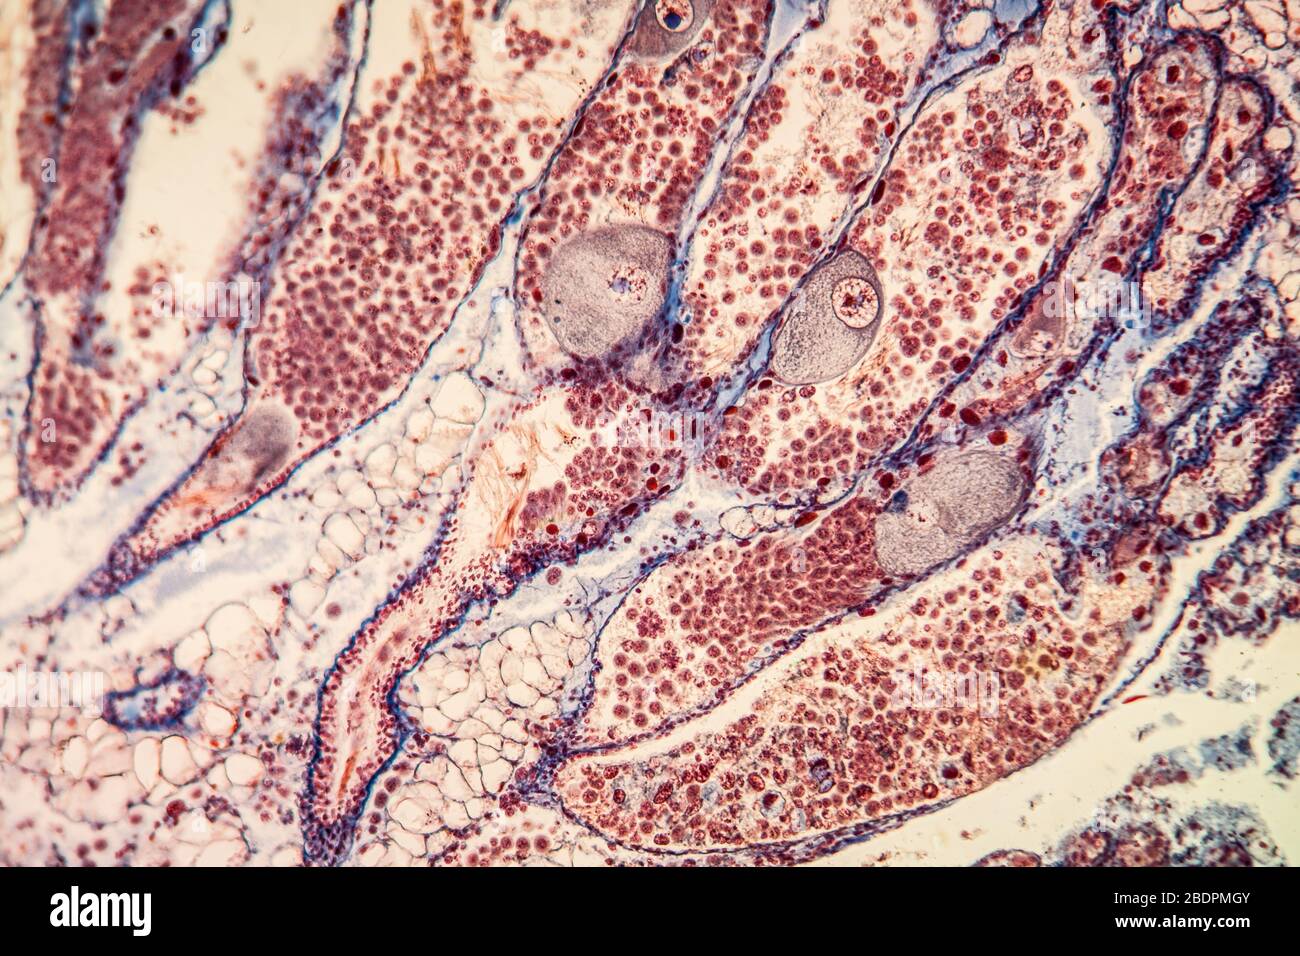 hermaphrodite gland Gewebe unter dem Mikroskop 200x Stock Photo - Alamy